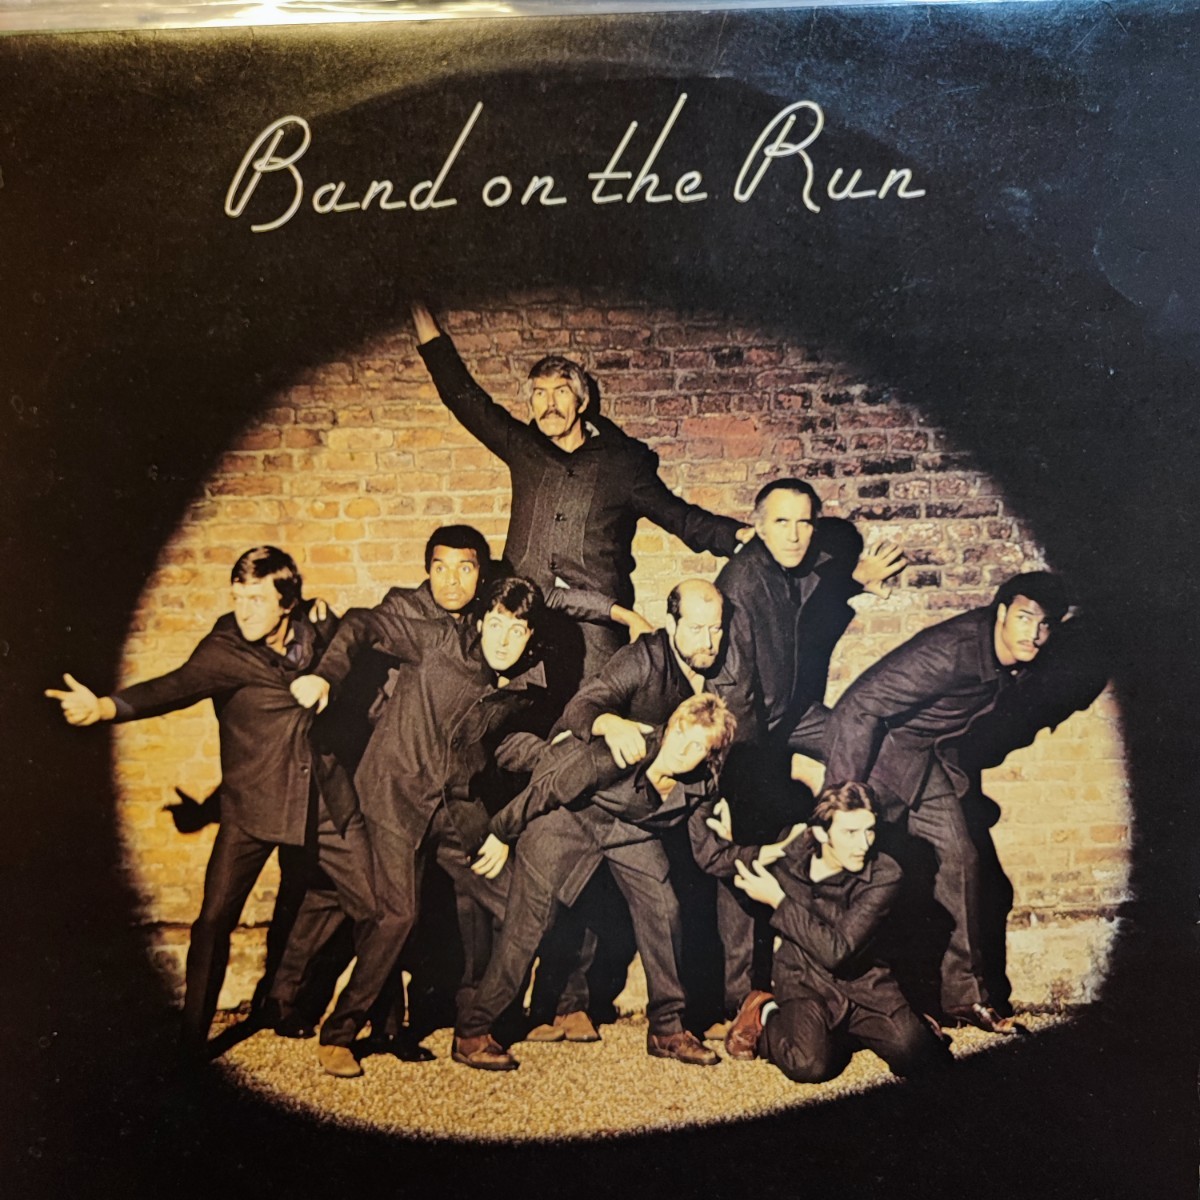 LP UK ORIG BAND ON THE RUN バンド・オン・ザ・ラン ポール・マッカートニー&ウイングス Paul McCartney & WINGS オリジナル 美盤_画像1